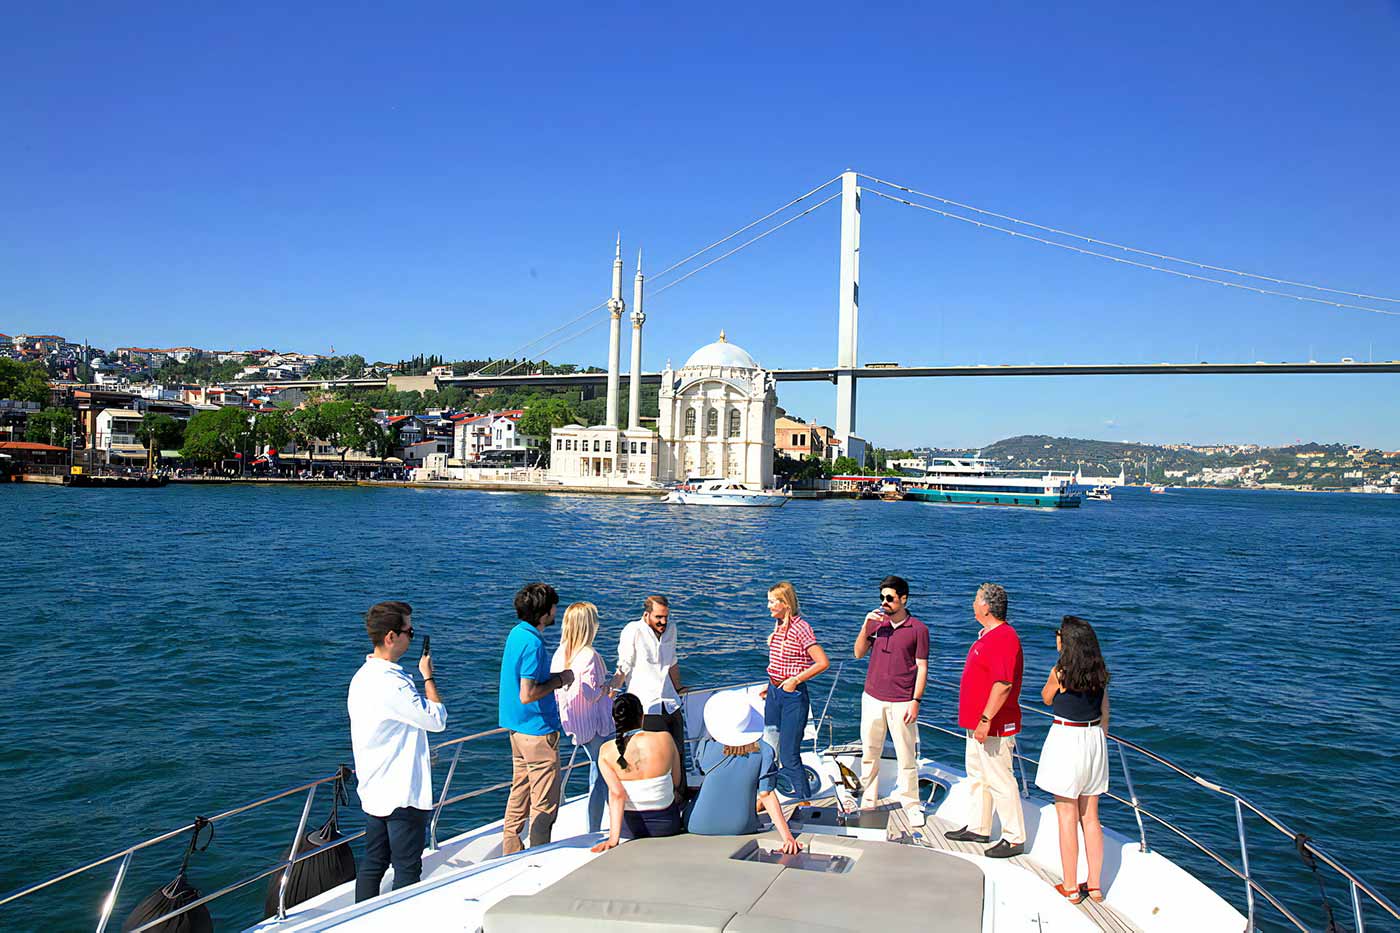 People on Boat in Istanbul Bosphorus